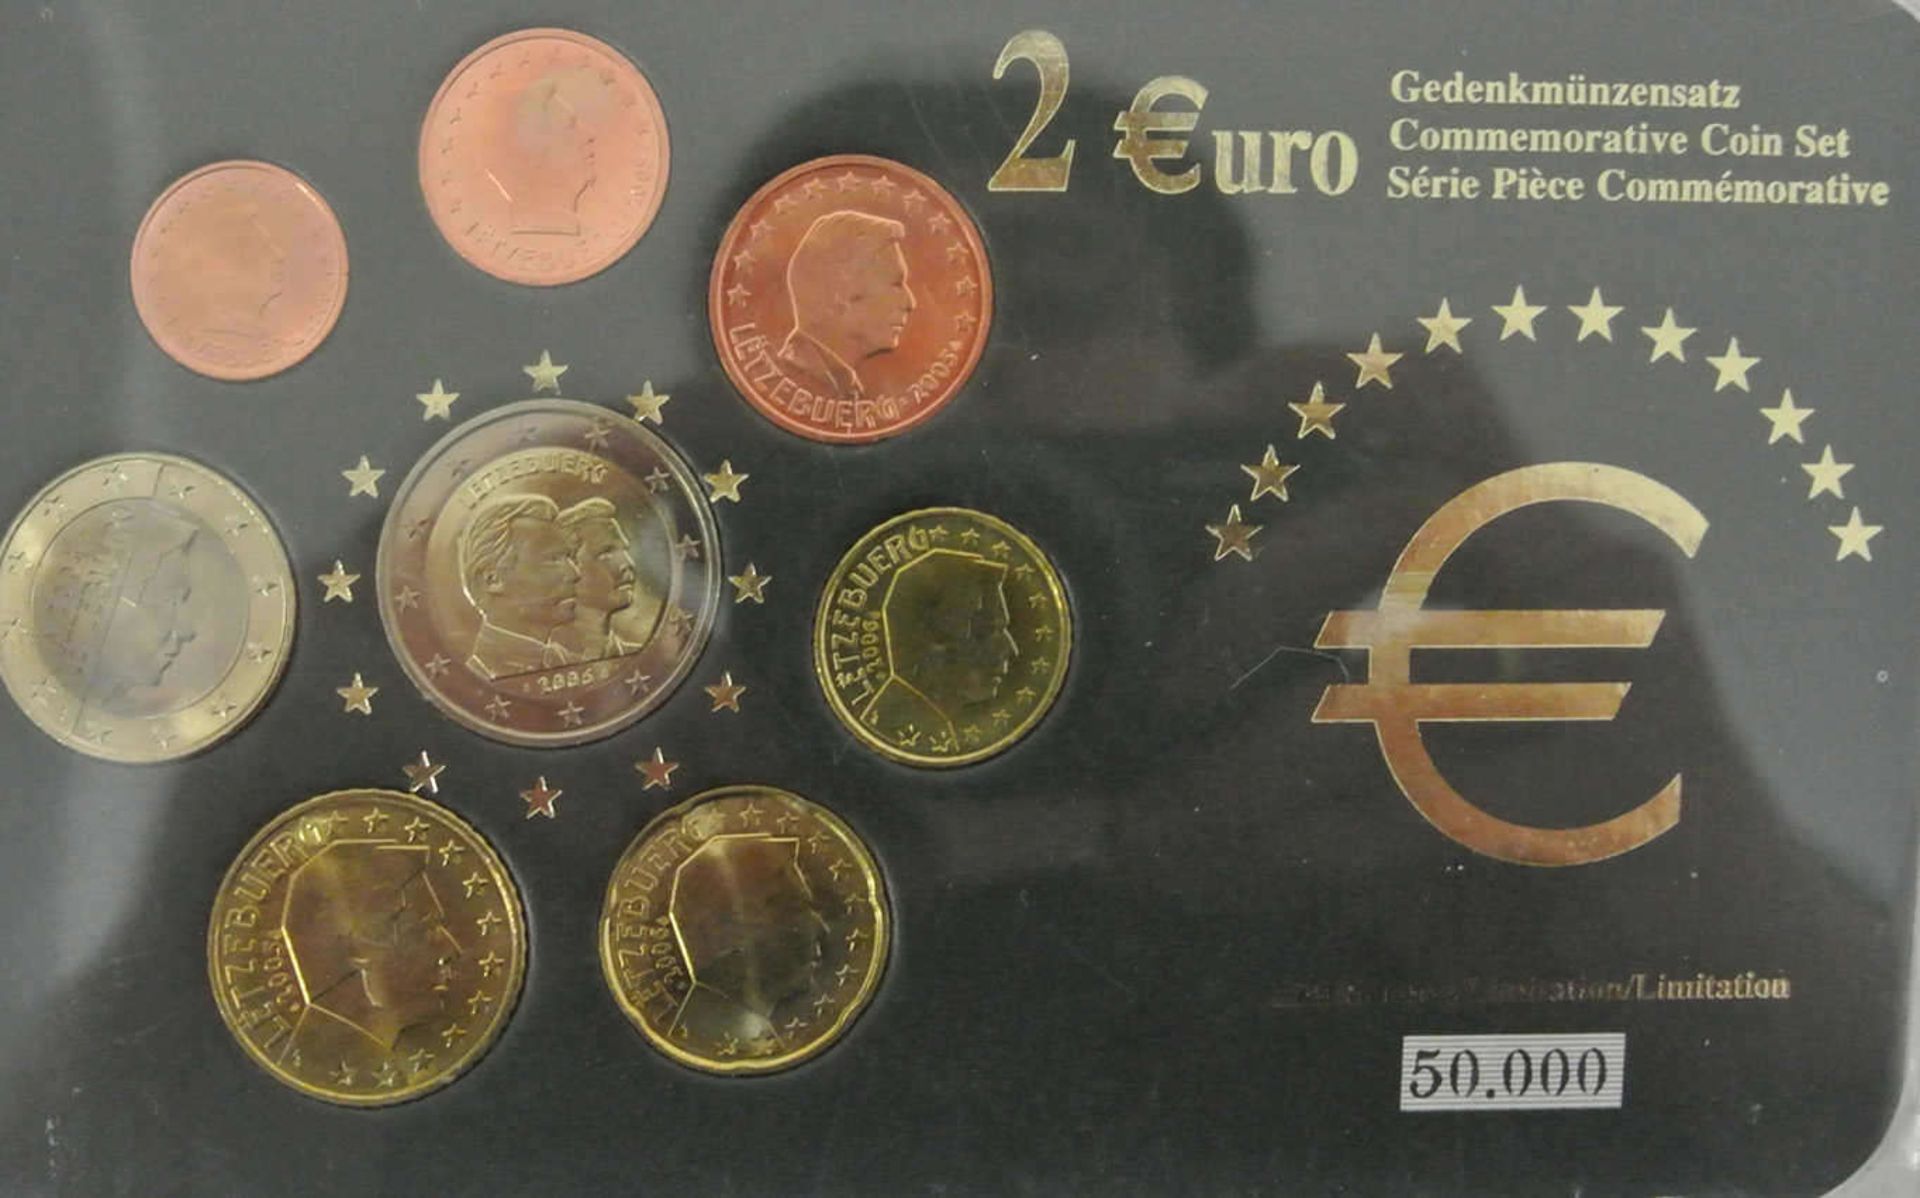 1 Gedenkmünzsatz von Luxemburg 2006 im Original Blister. 1 commemorative coin from Luxembourg 2006